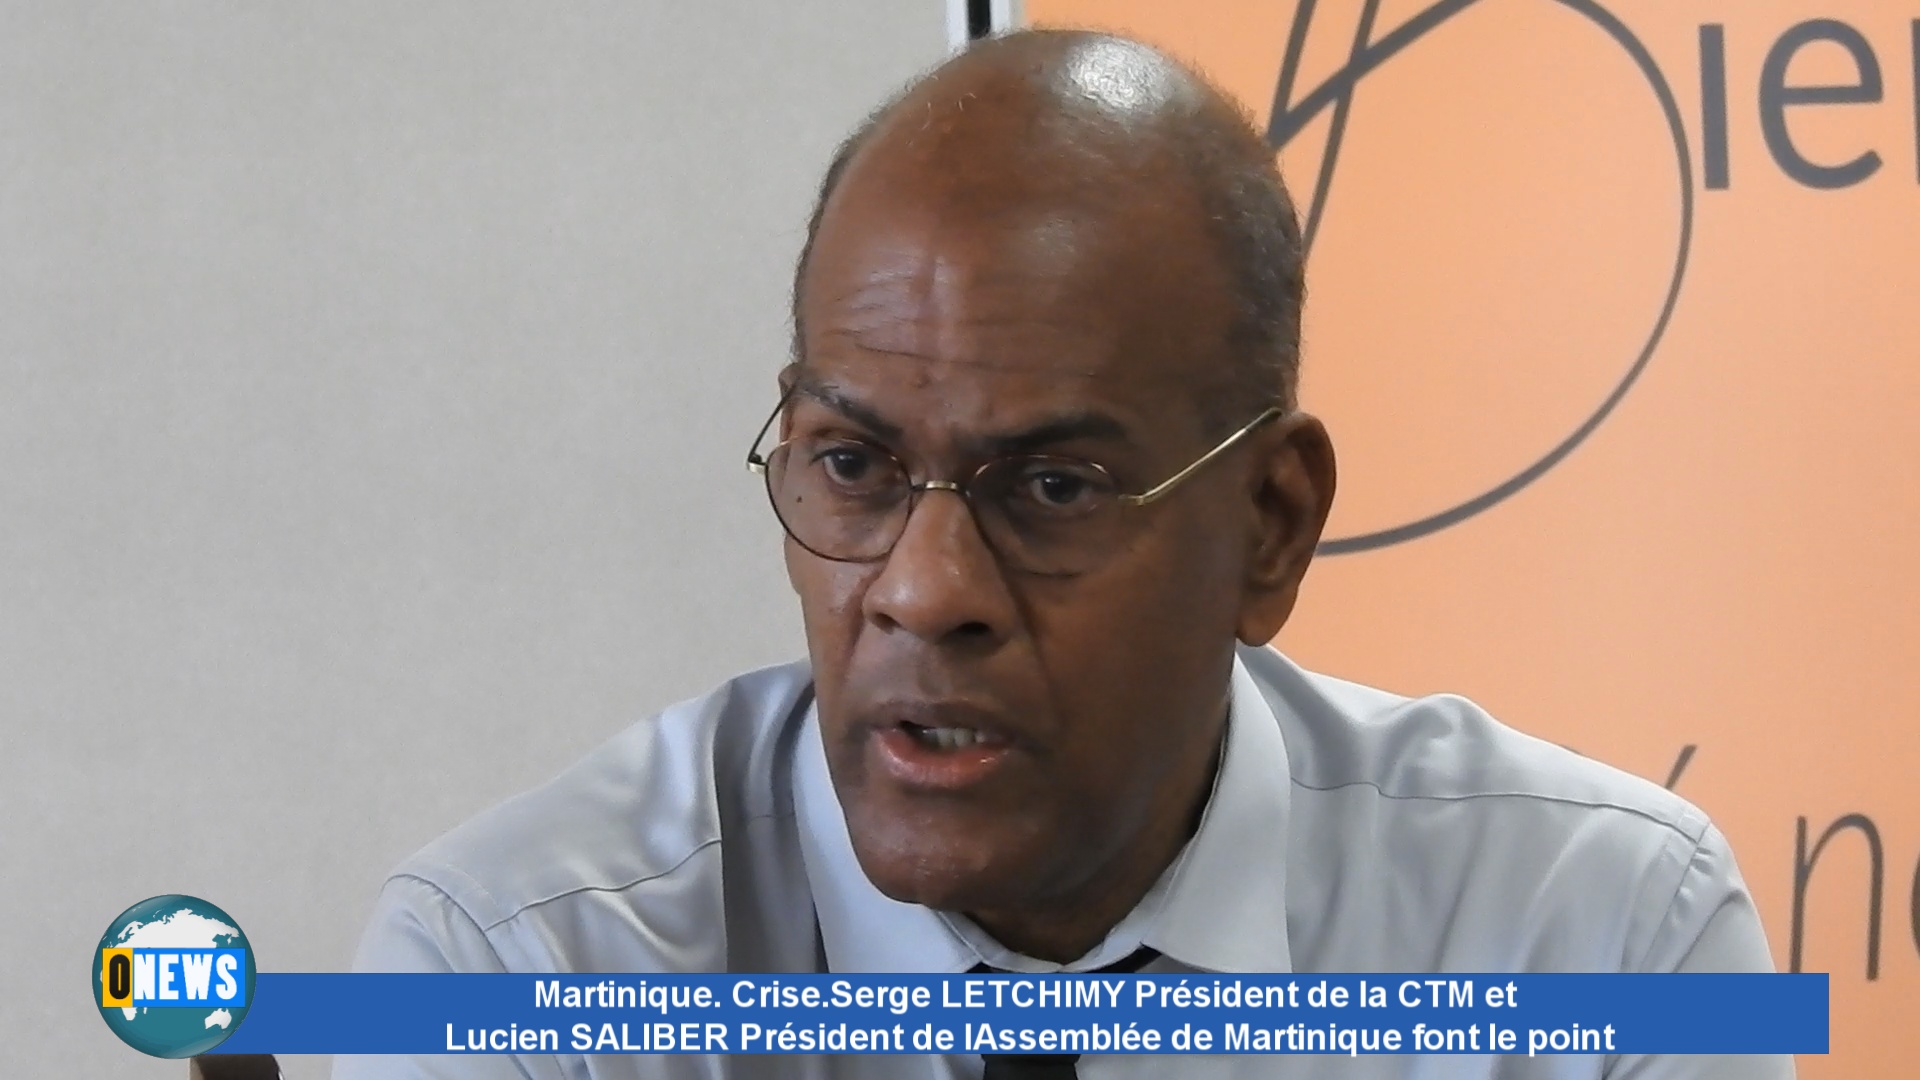 [Vidéo] Martinique. Crise. Serge LETCHIMY Président de la CTM fait le point